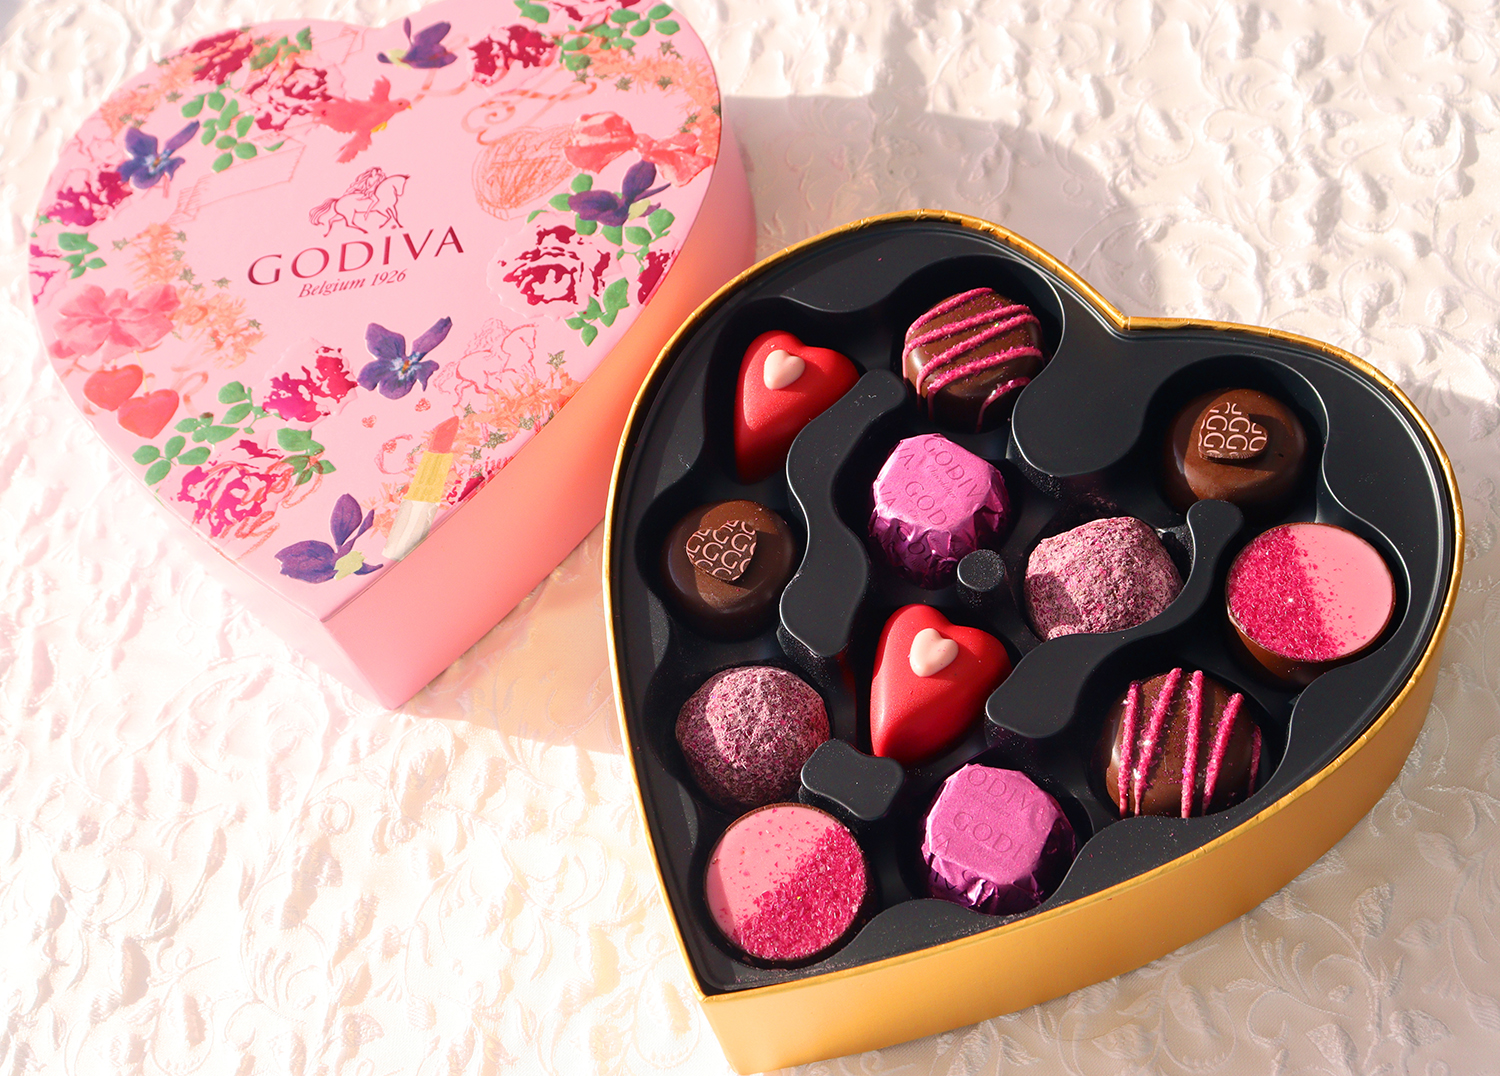 キュン とする瞬間 ときめく心 をピンクで表現 Godiva ゴディバ 22年バレンタインコレクション発売 Emo Miu エモミュー